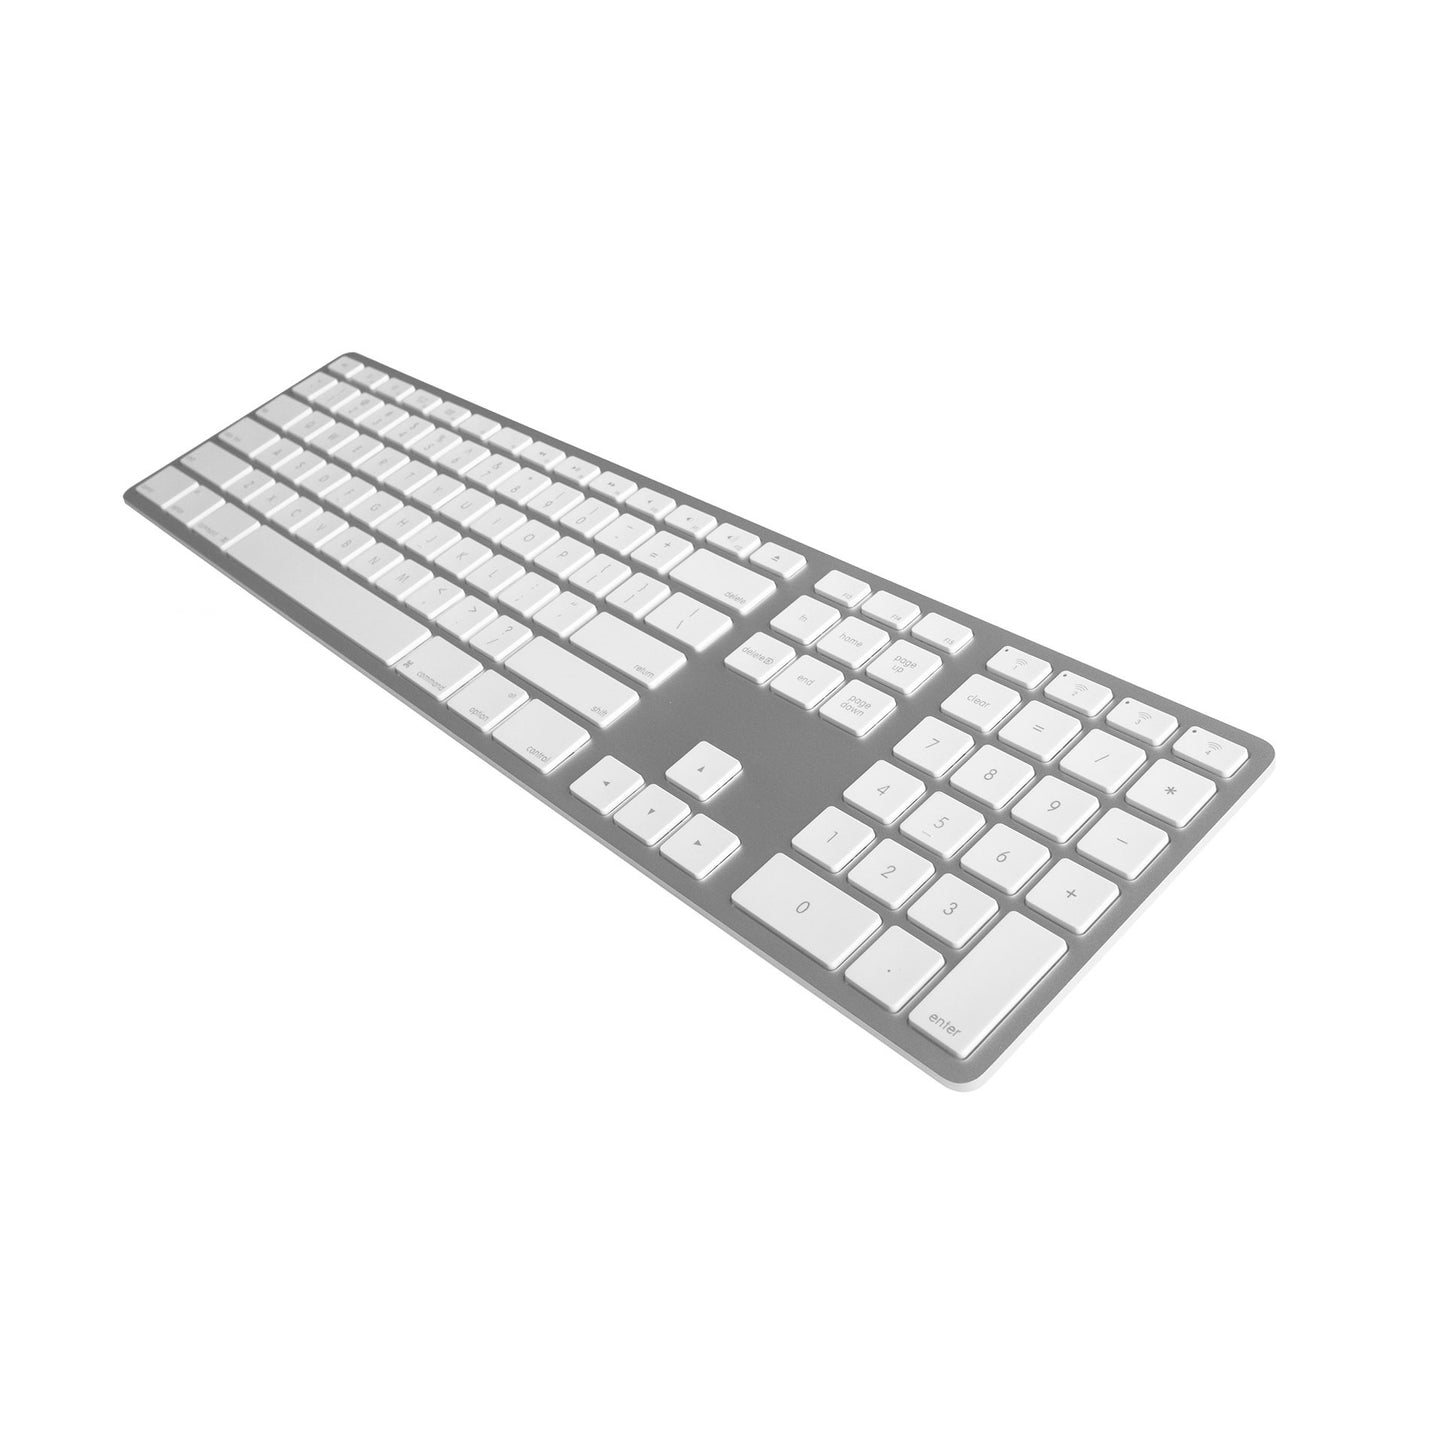 Wireless Aluminum Keyboard - Silver